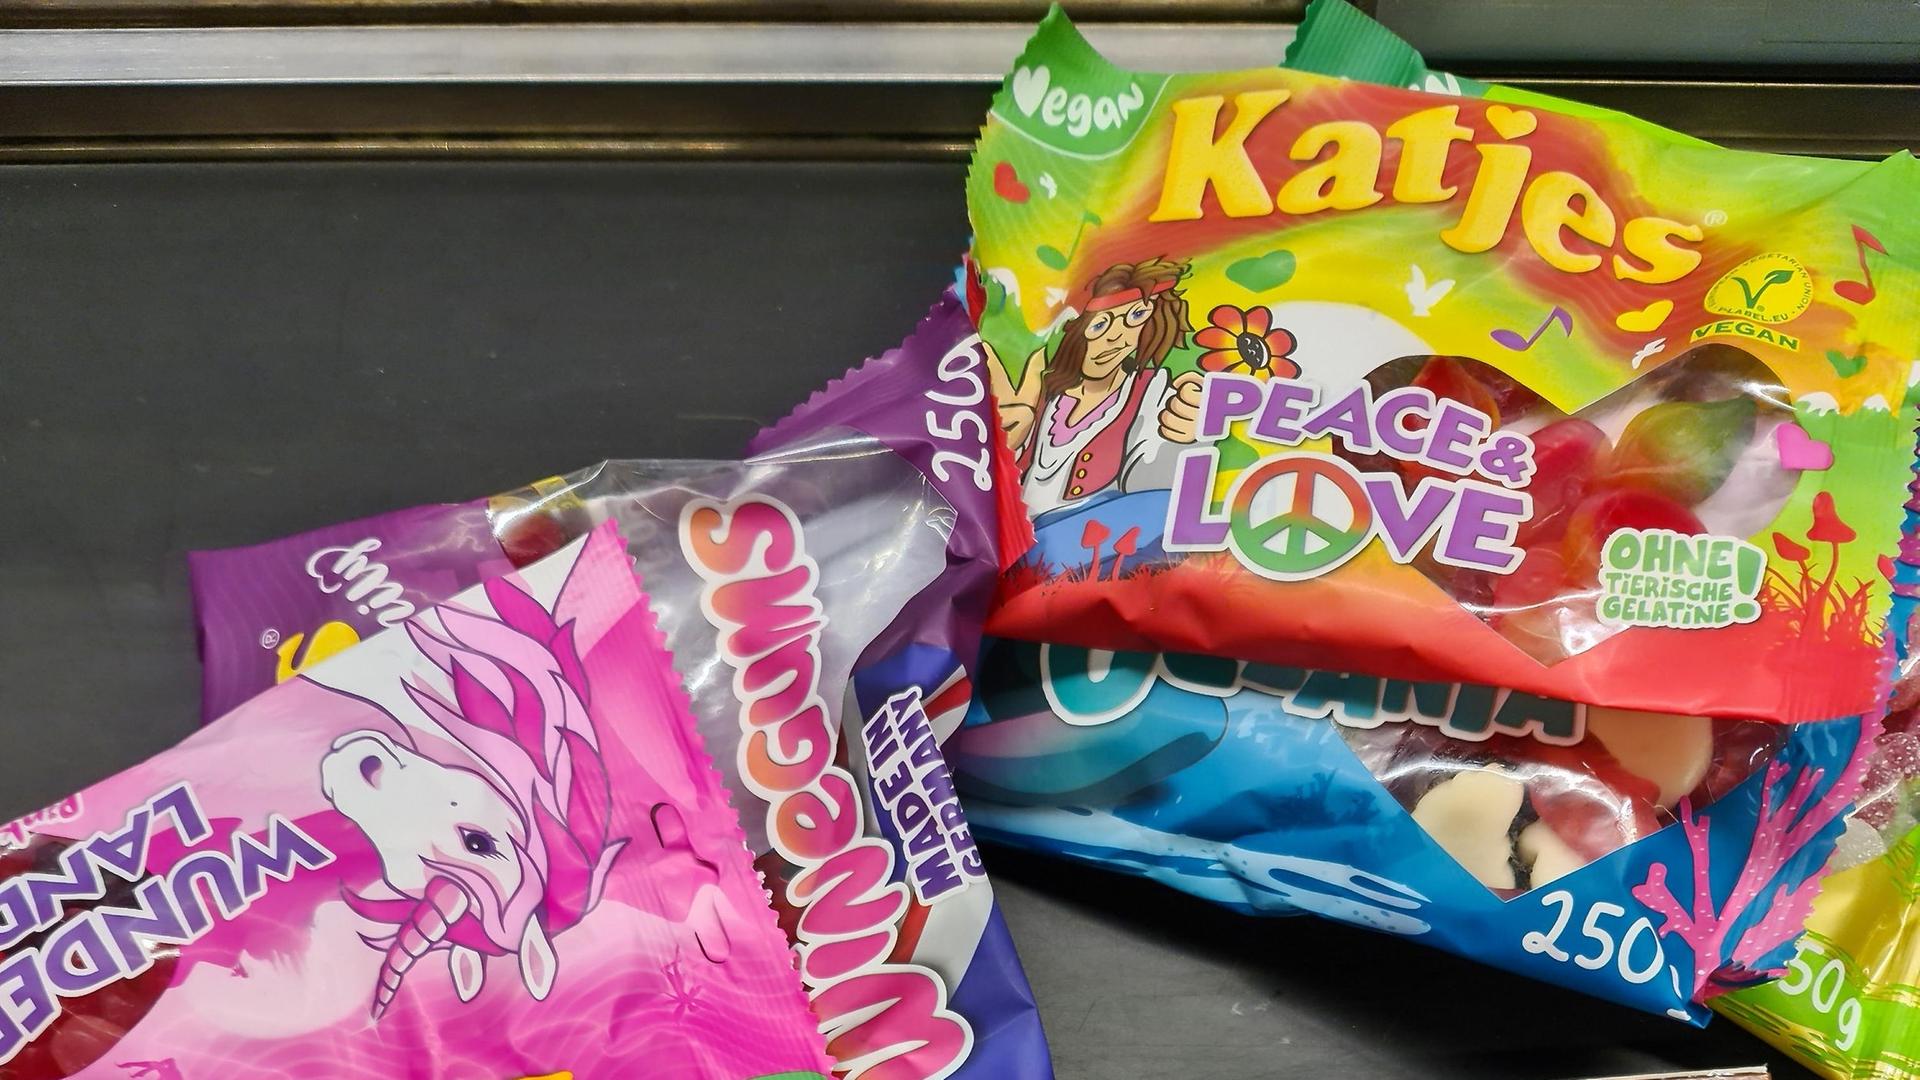 Verschiedene Artikel, wie Toffifee und Katjes liegen auf dem Kassenband eines Supermarktes in Deutschland.